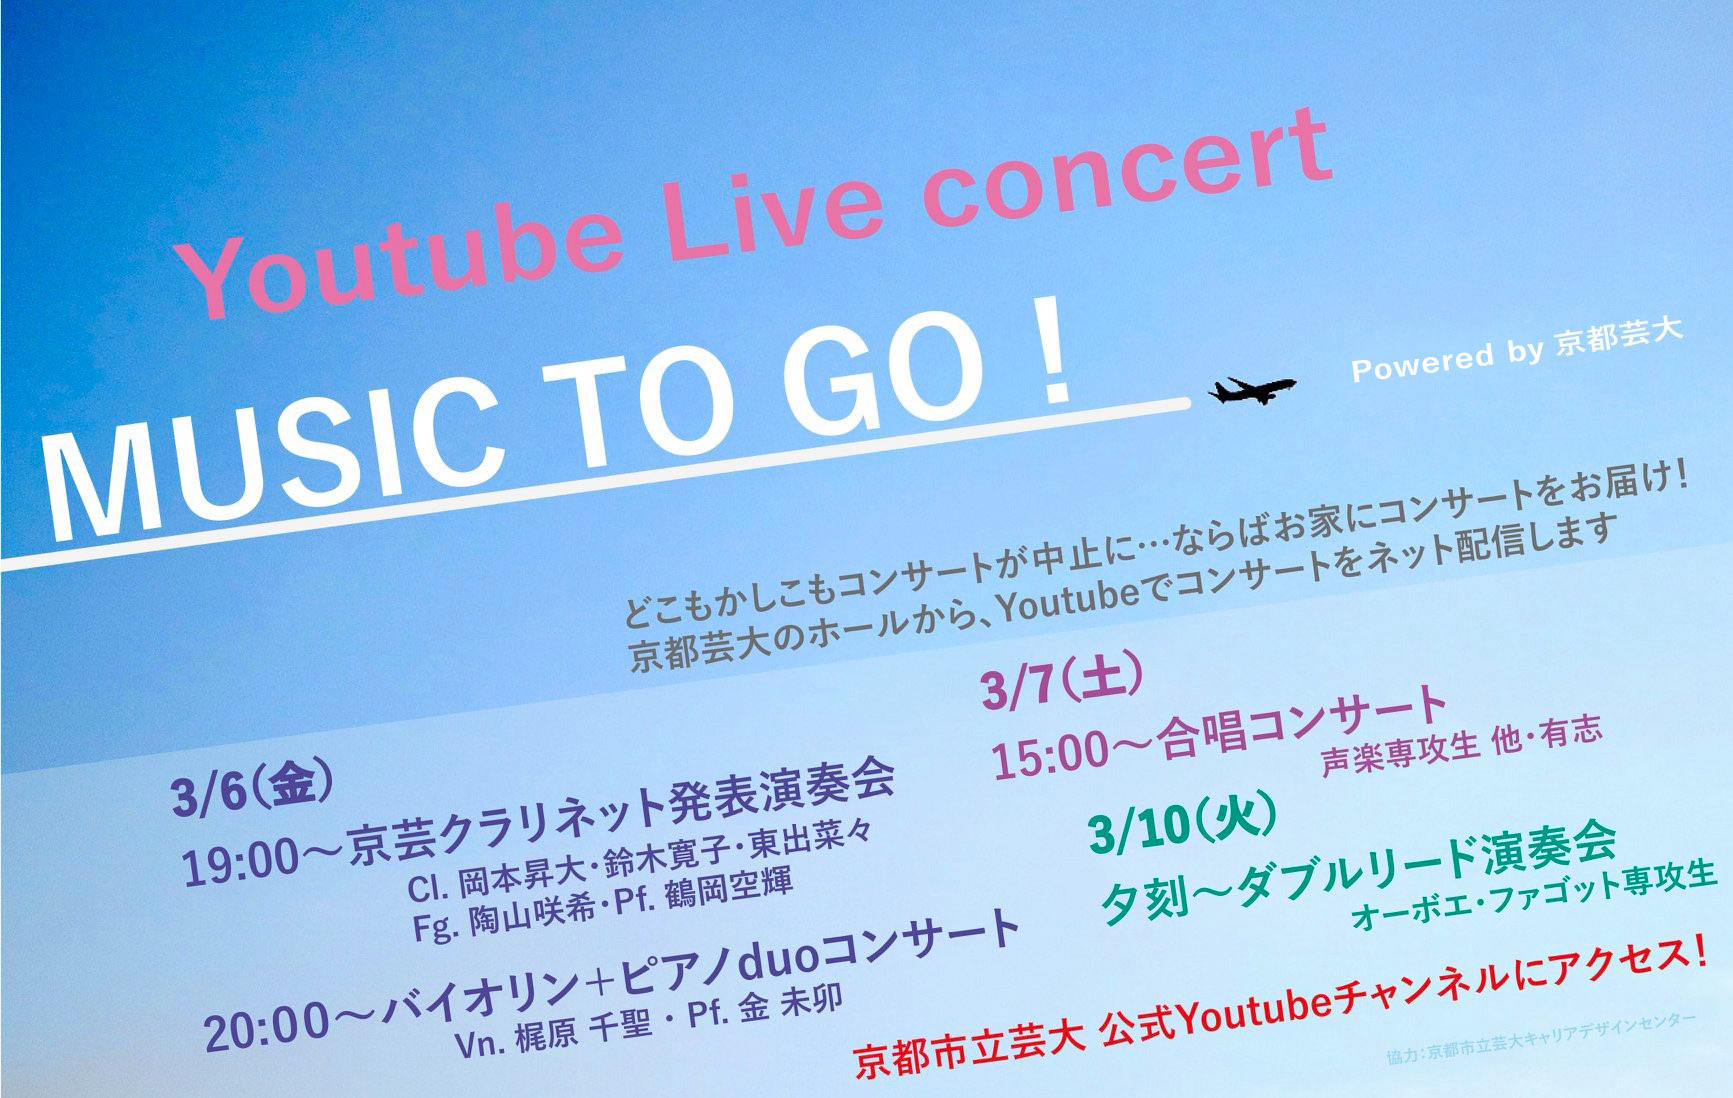 【センター協力事業】Youtube Live concert「MUSIC TO GO!」